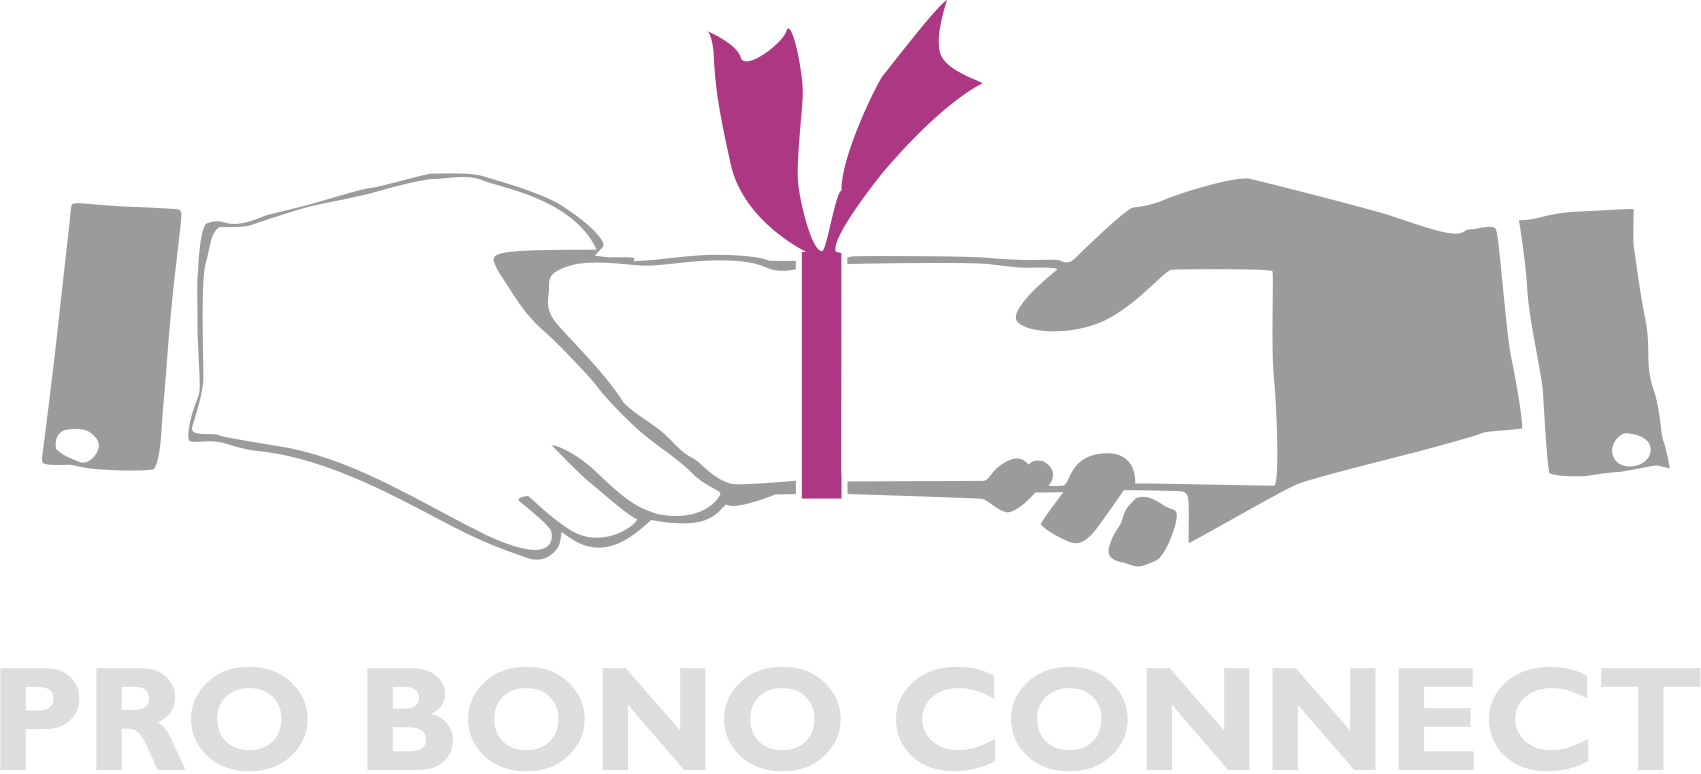 Pro Bono Connect